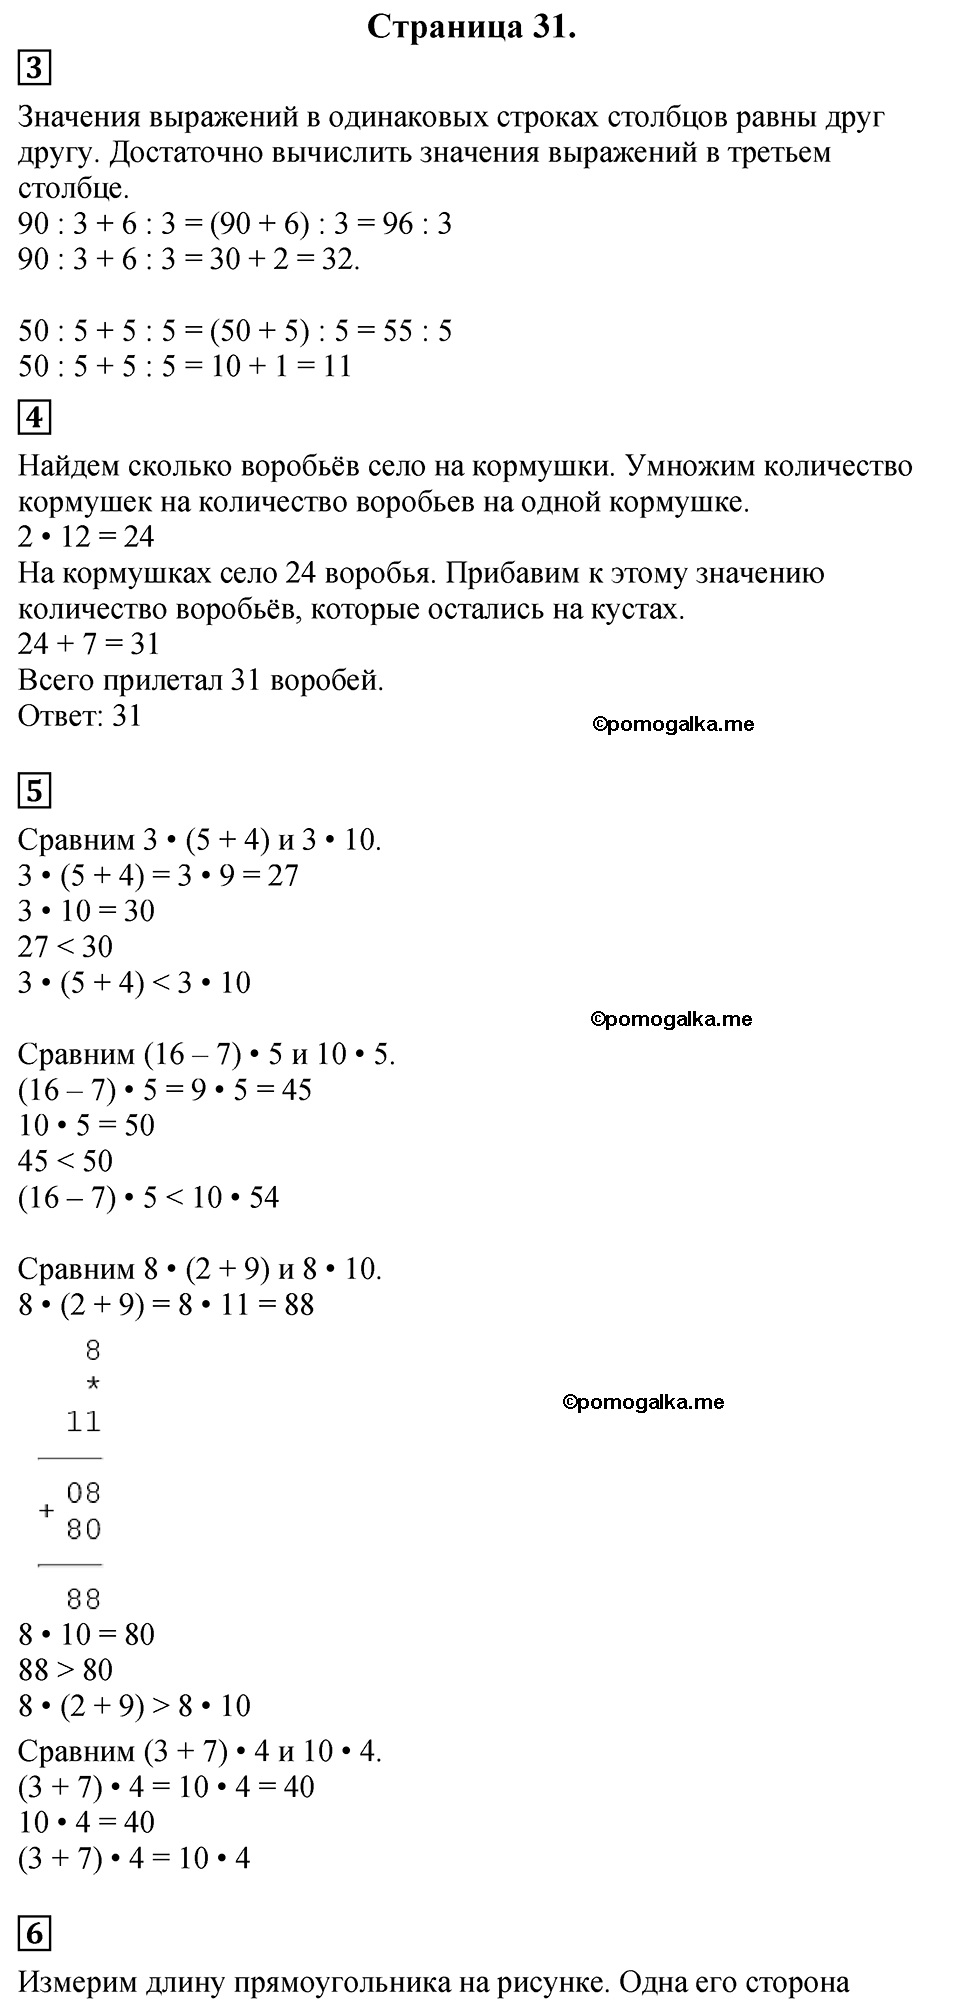 Страница №31 Часть 2 математика 3 класс Дорофеев